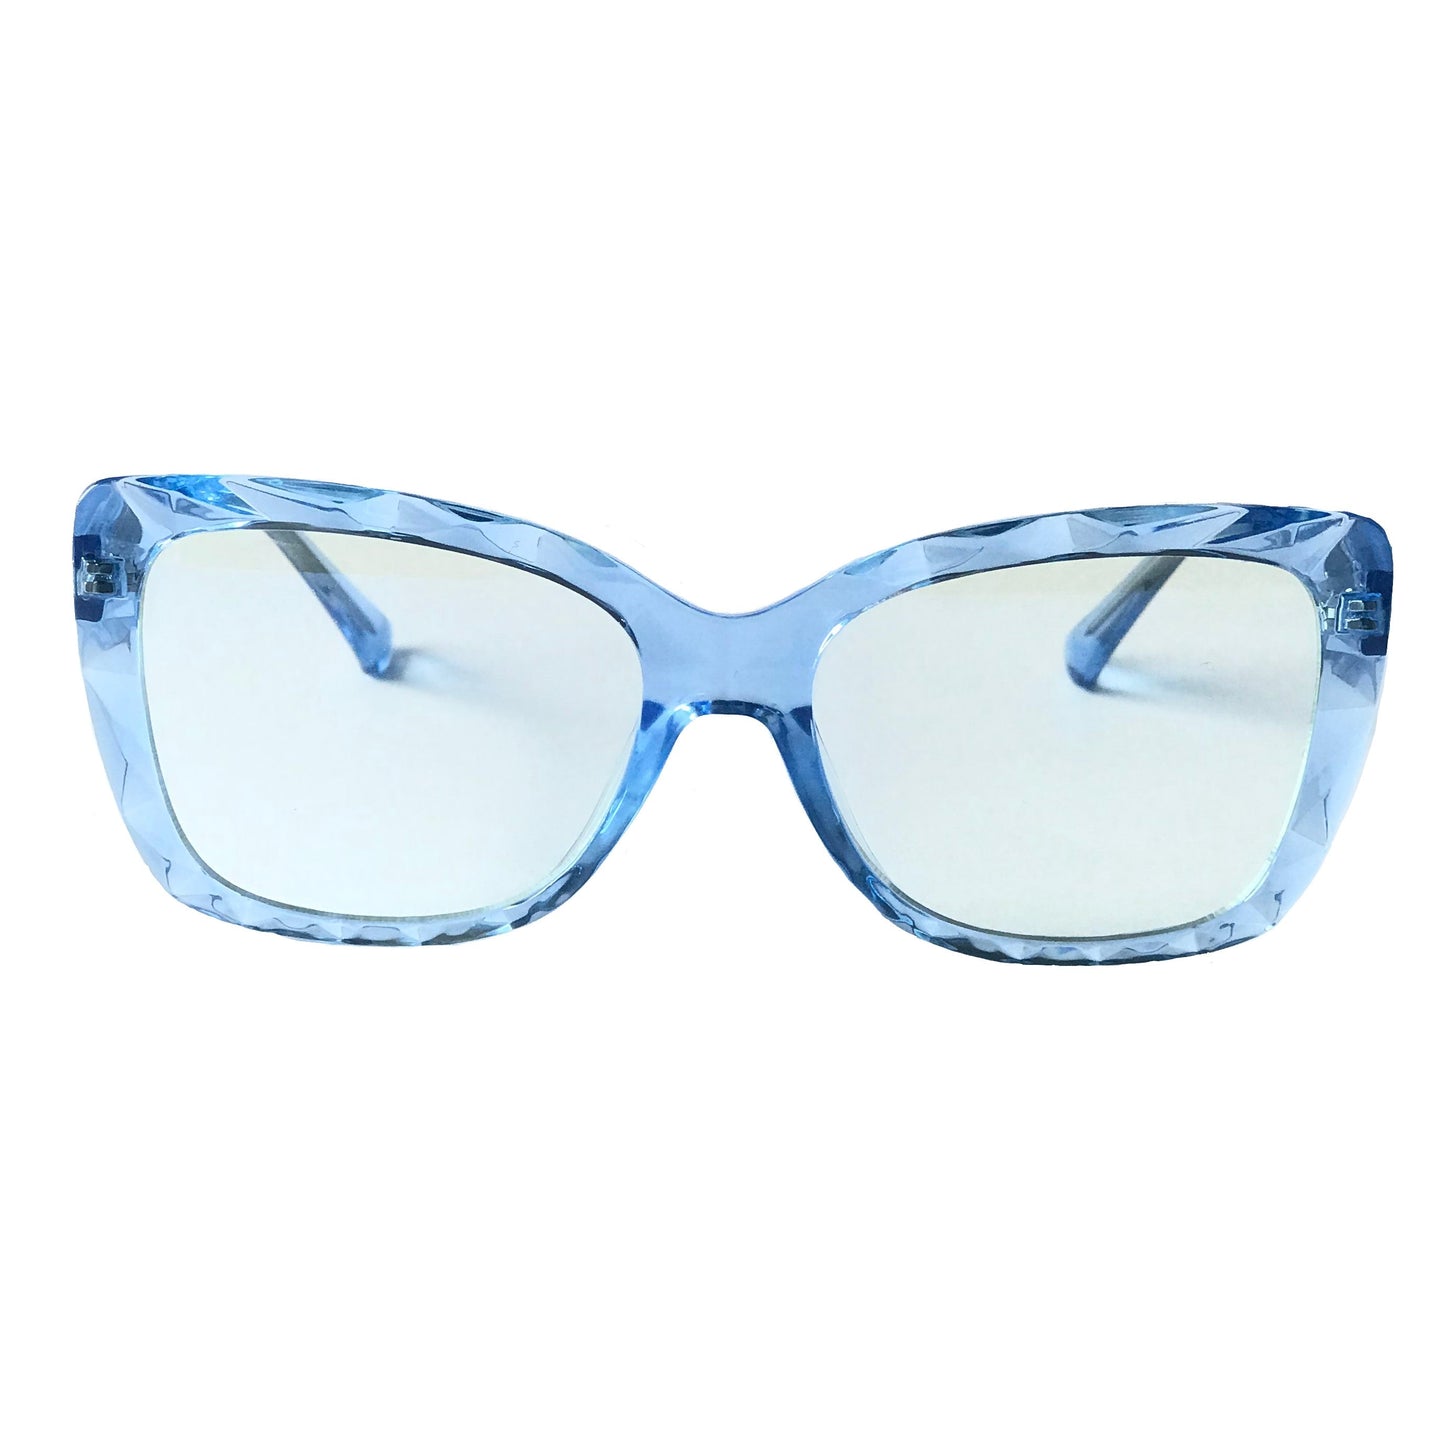 Dumbo Blue Light Glasses - Woodensun Sunglasses - Blue Light